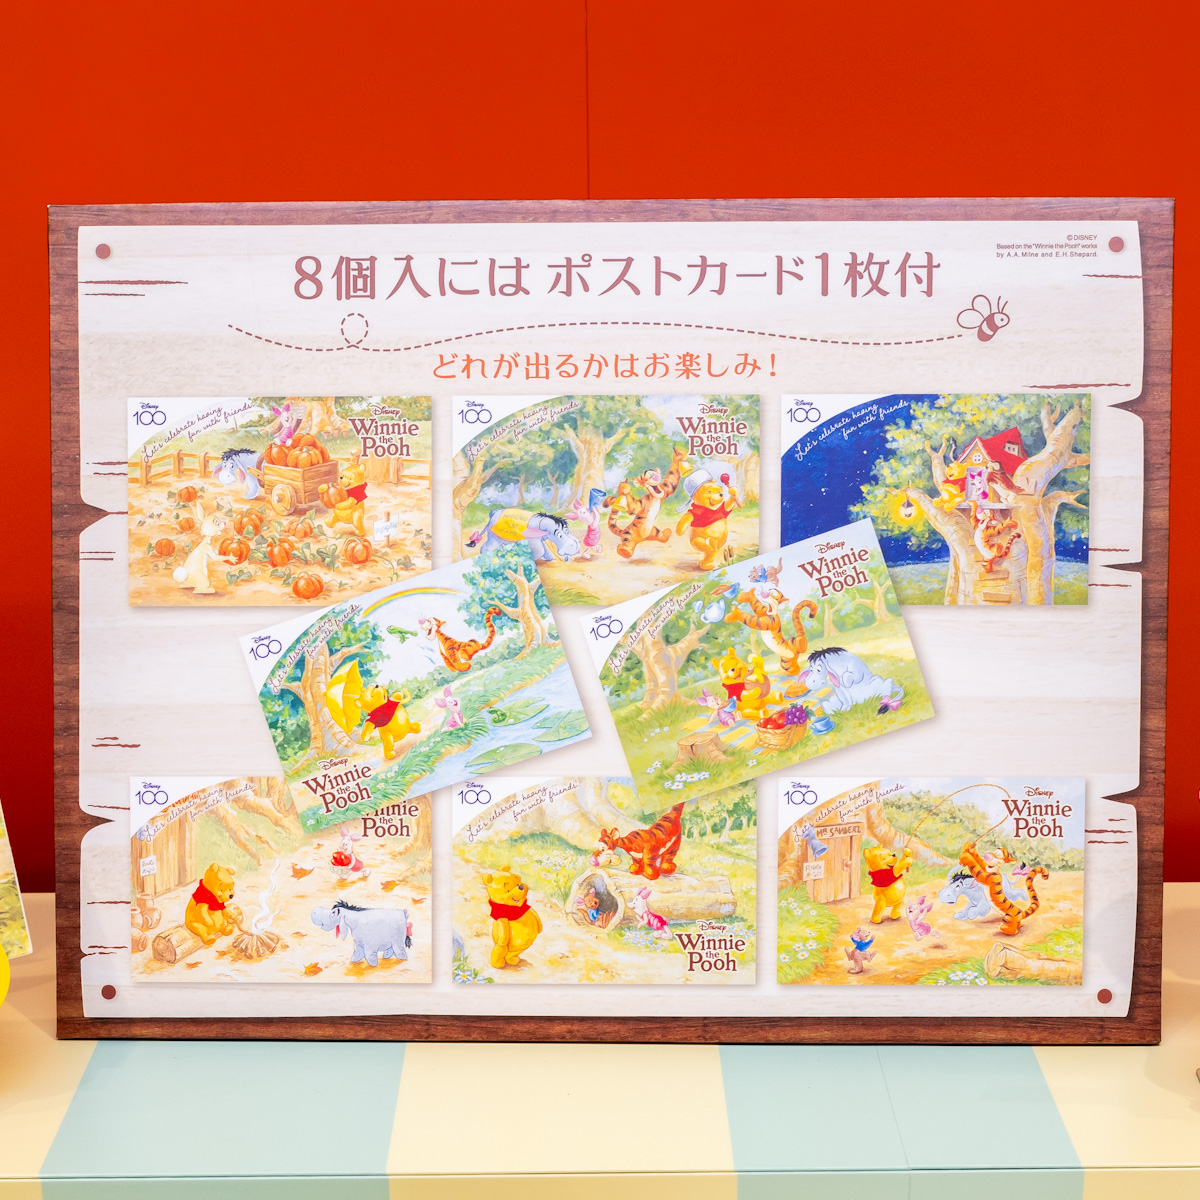 Disney SWEETS COLLECTION by 東京ばな奈『くまのプーさん/「銀座のハニーケーキ」です。』ポストカード